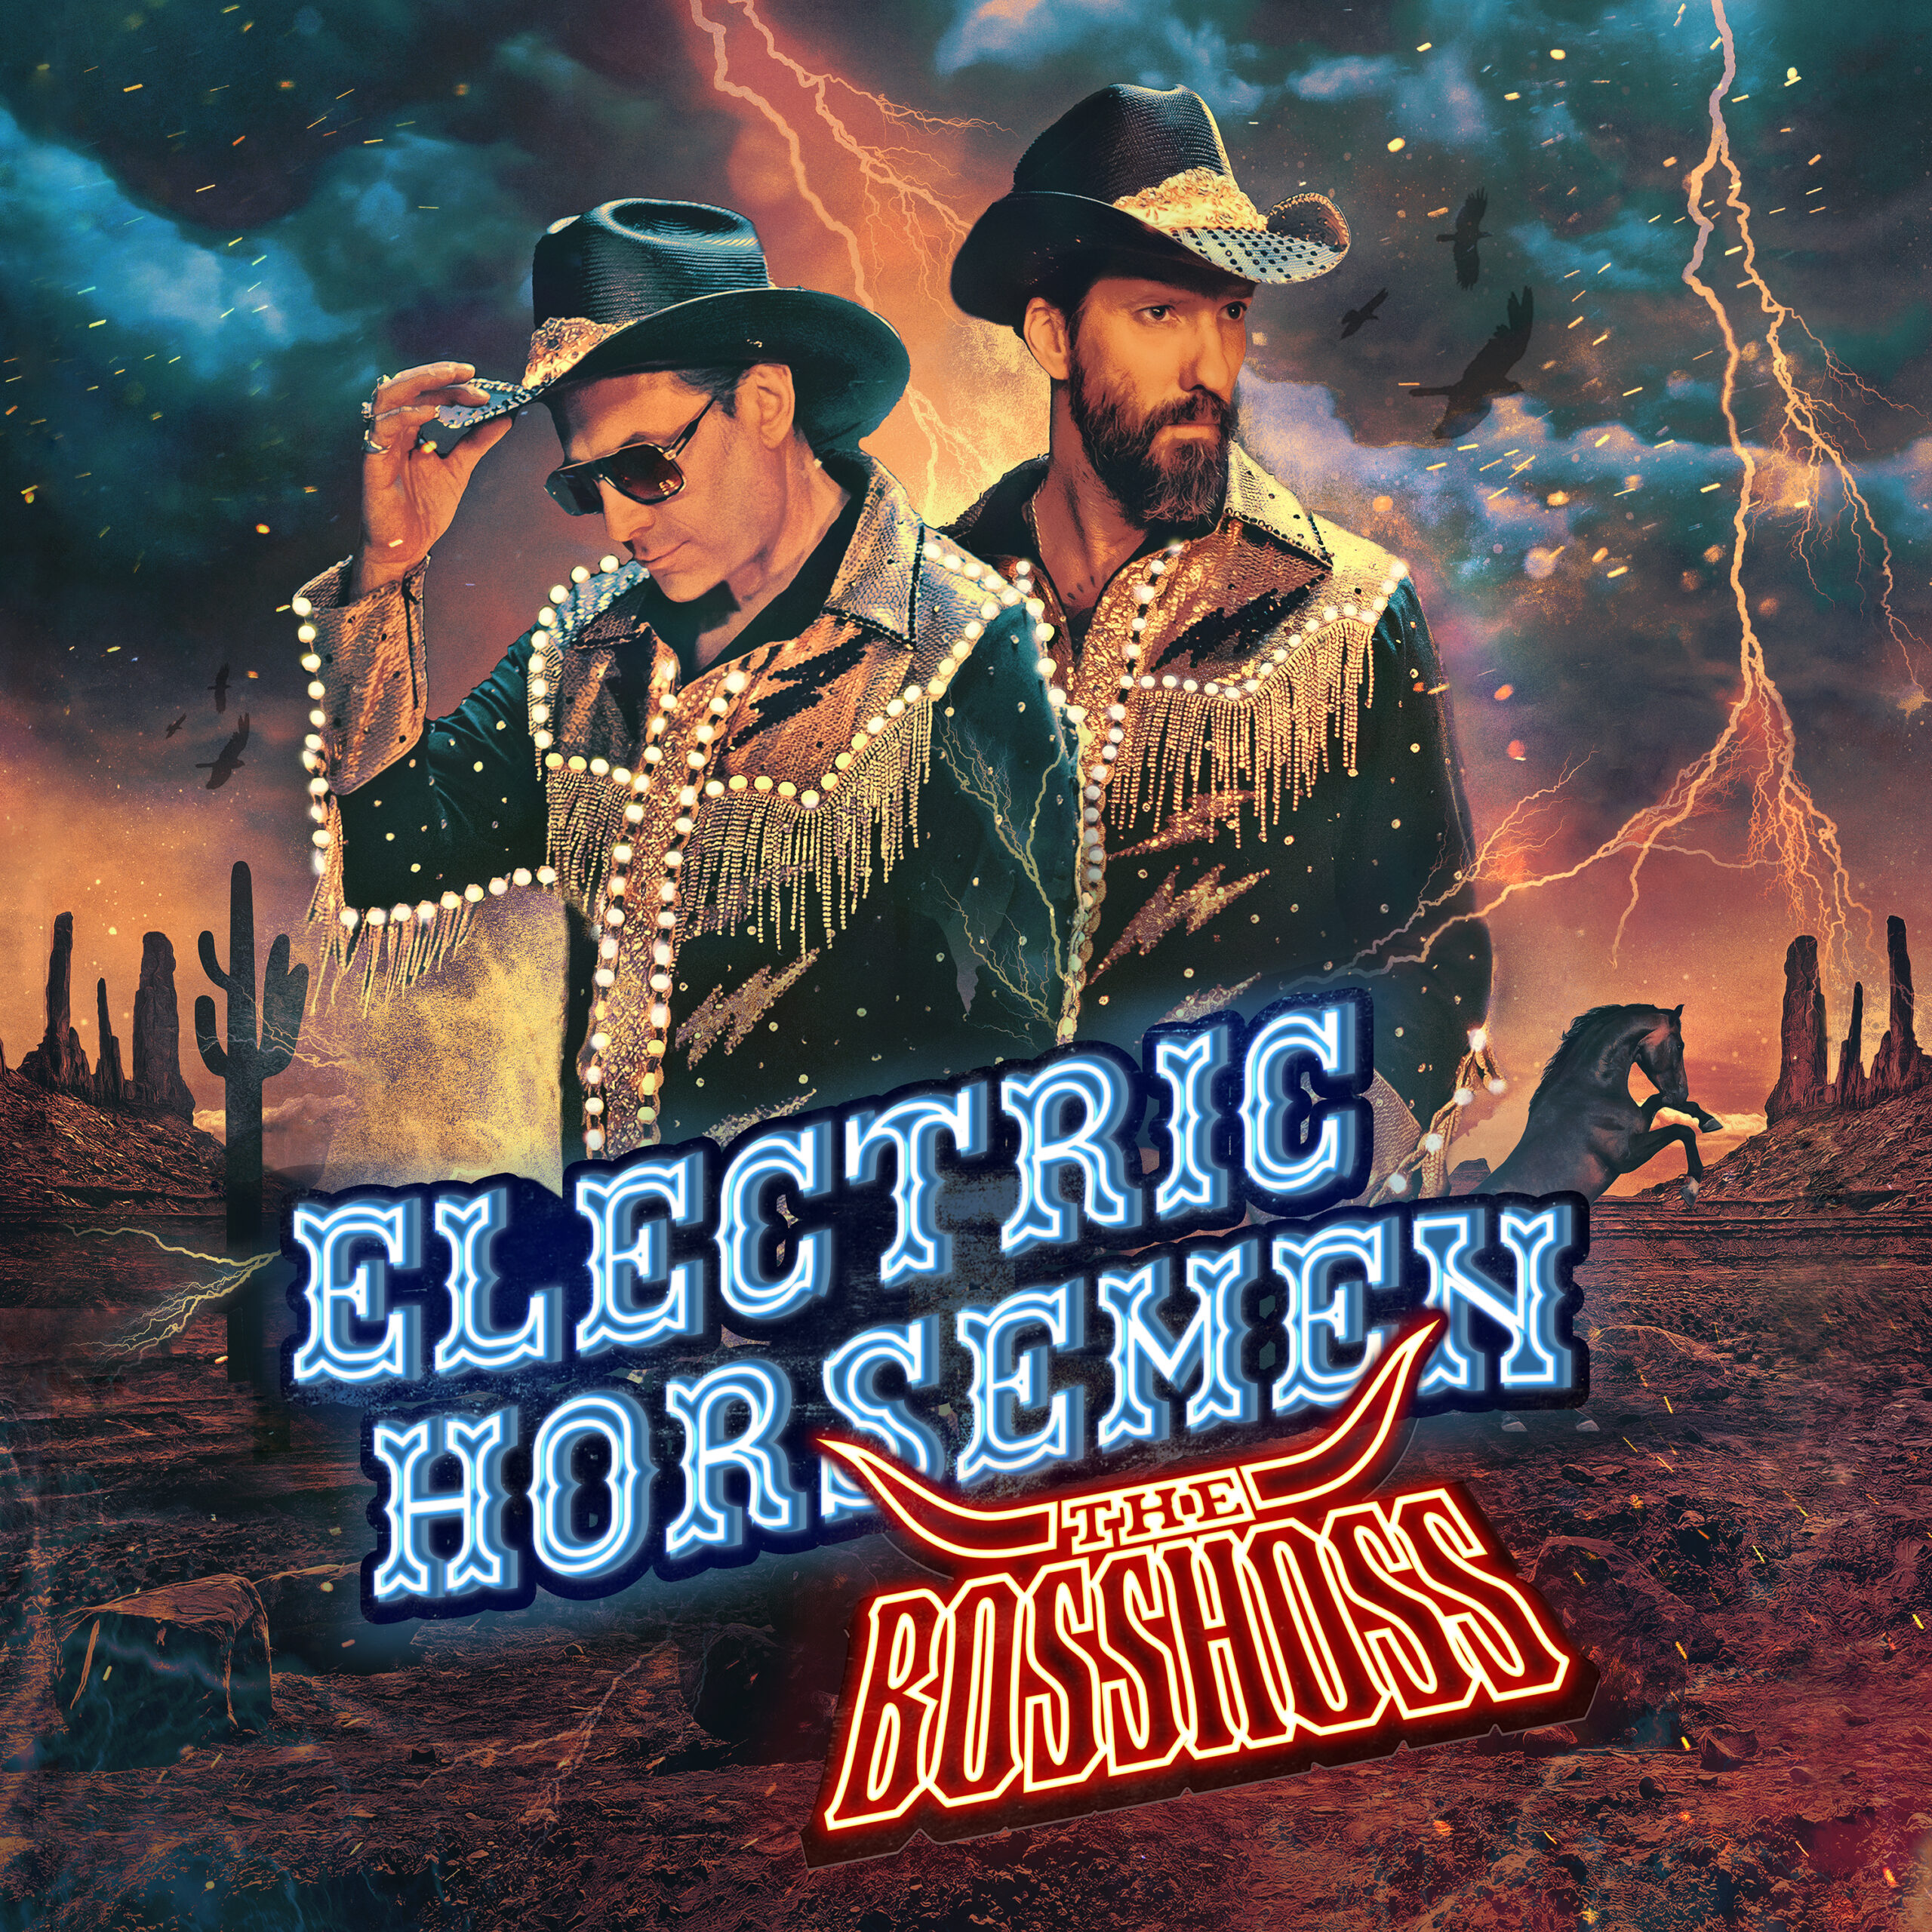 The BossHoss (D) – Electric Horsemen